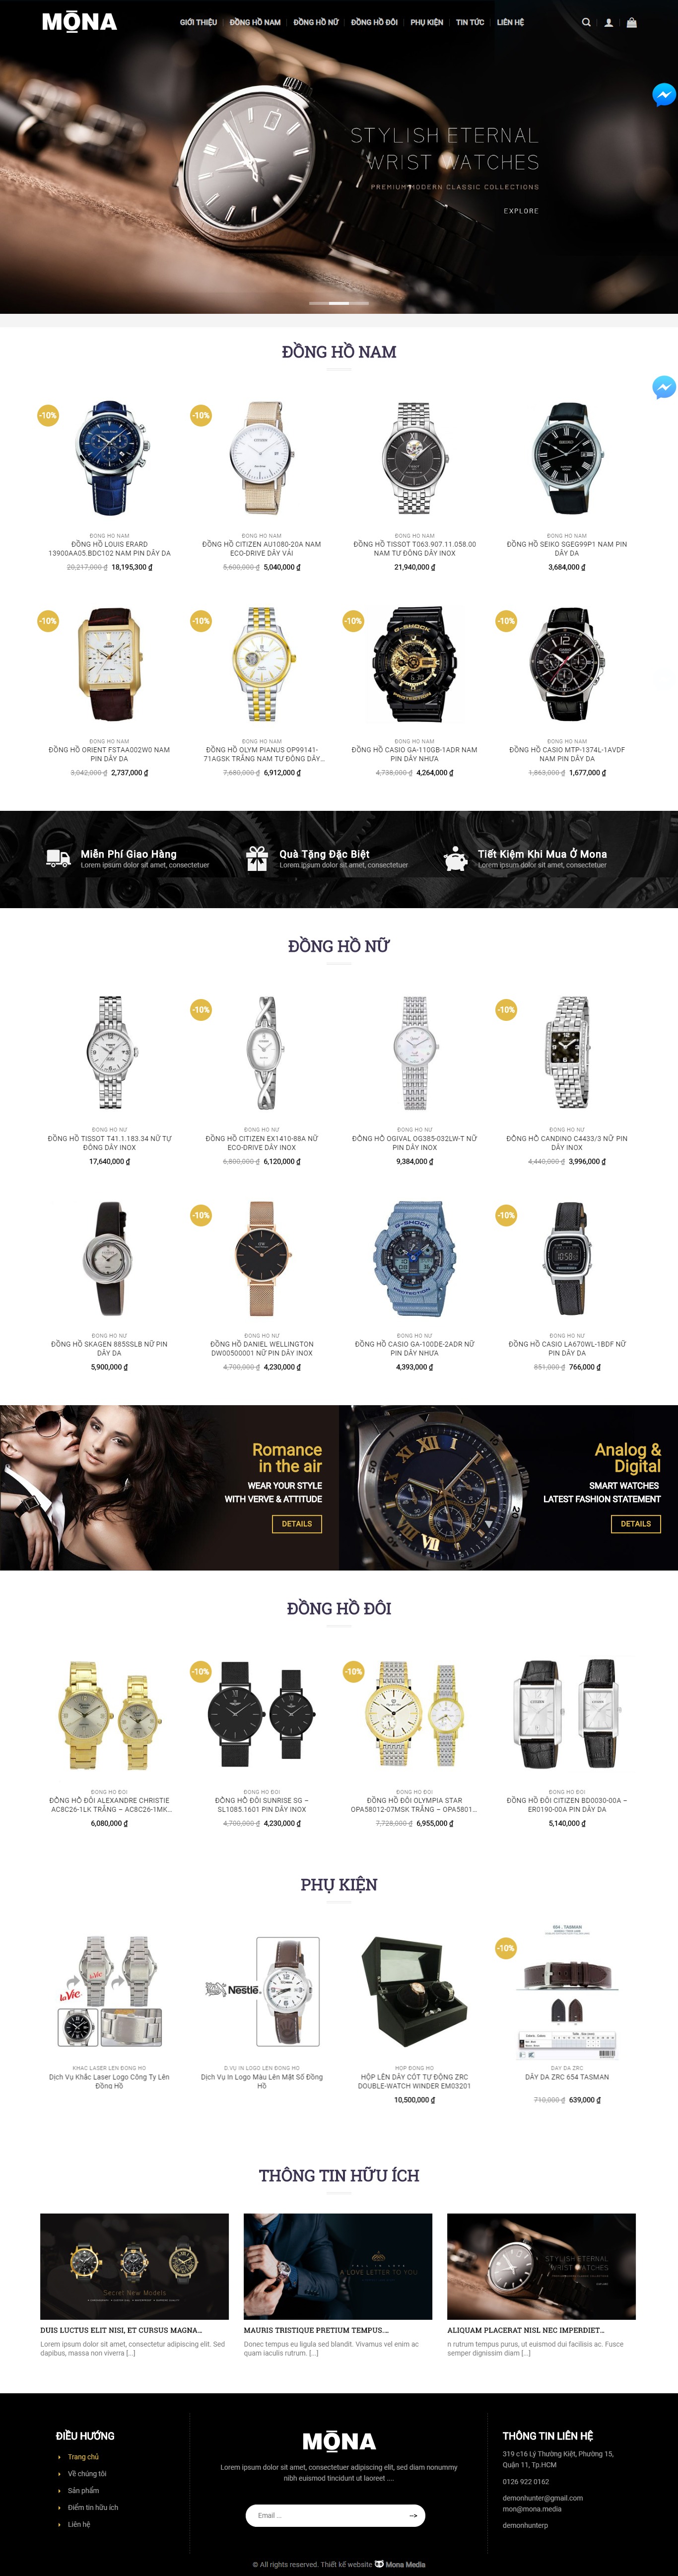 Mẫu website bán đồng hồ hiện đại.